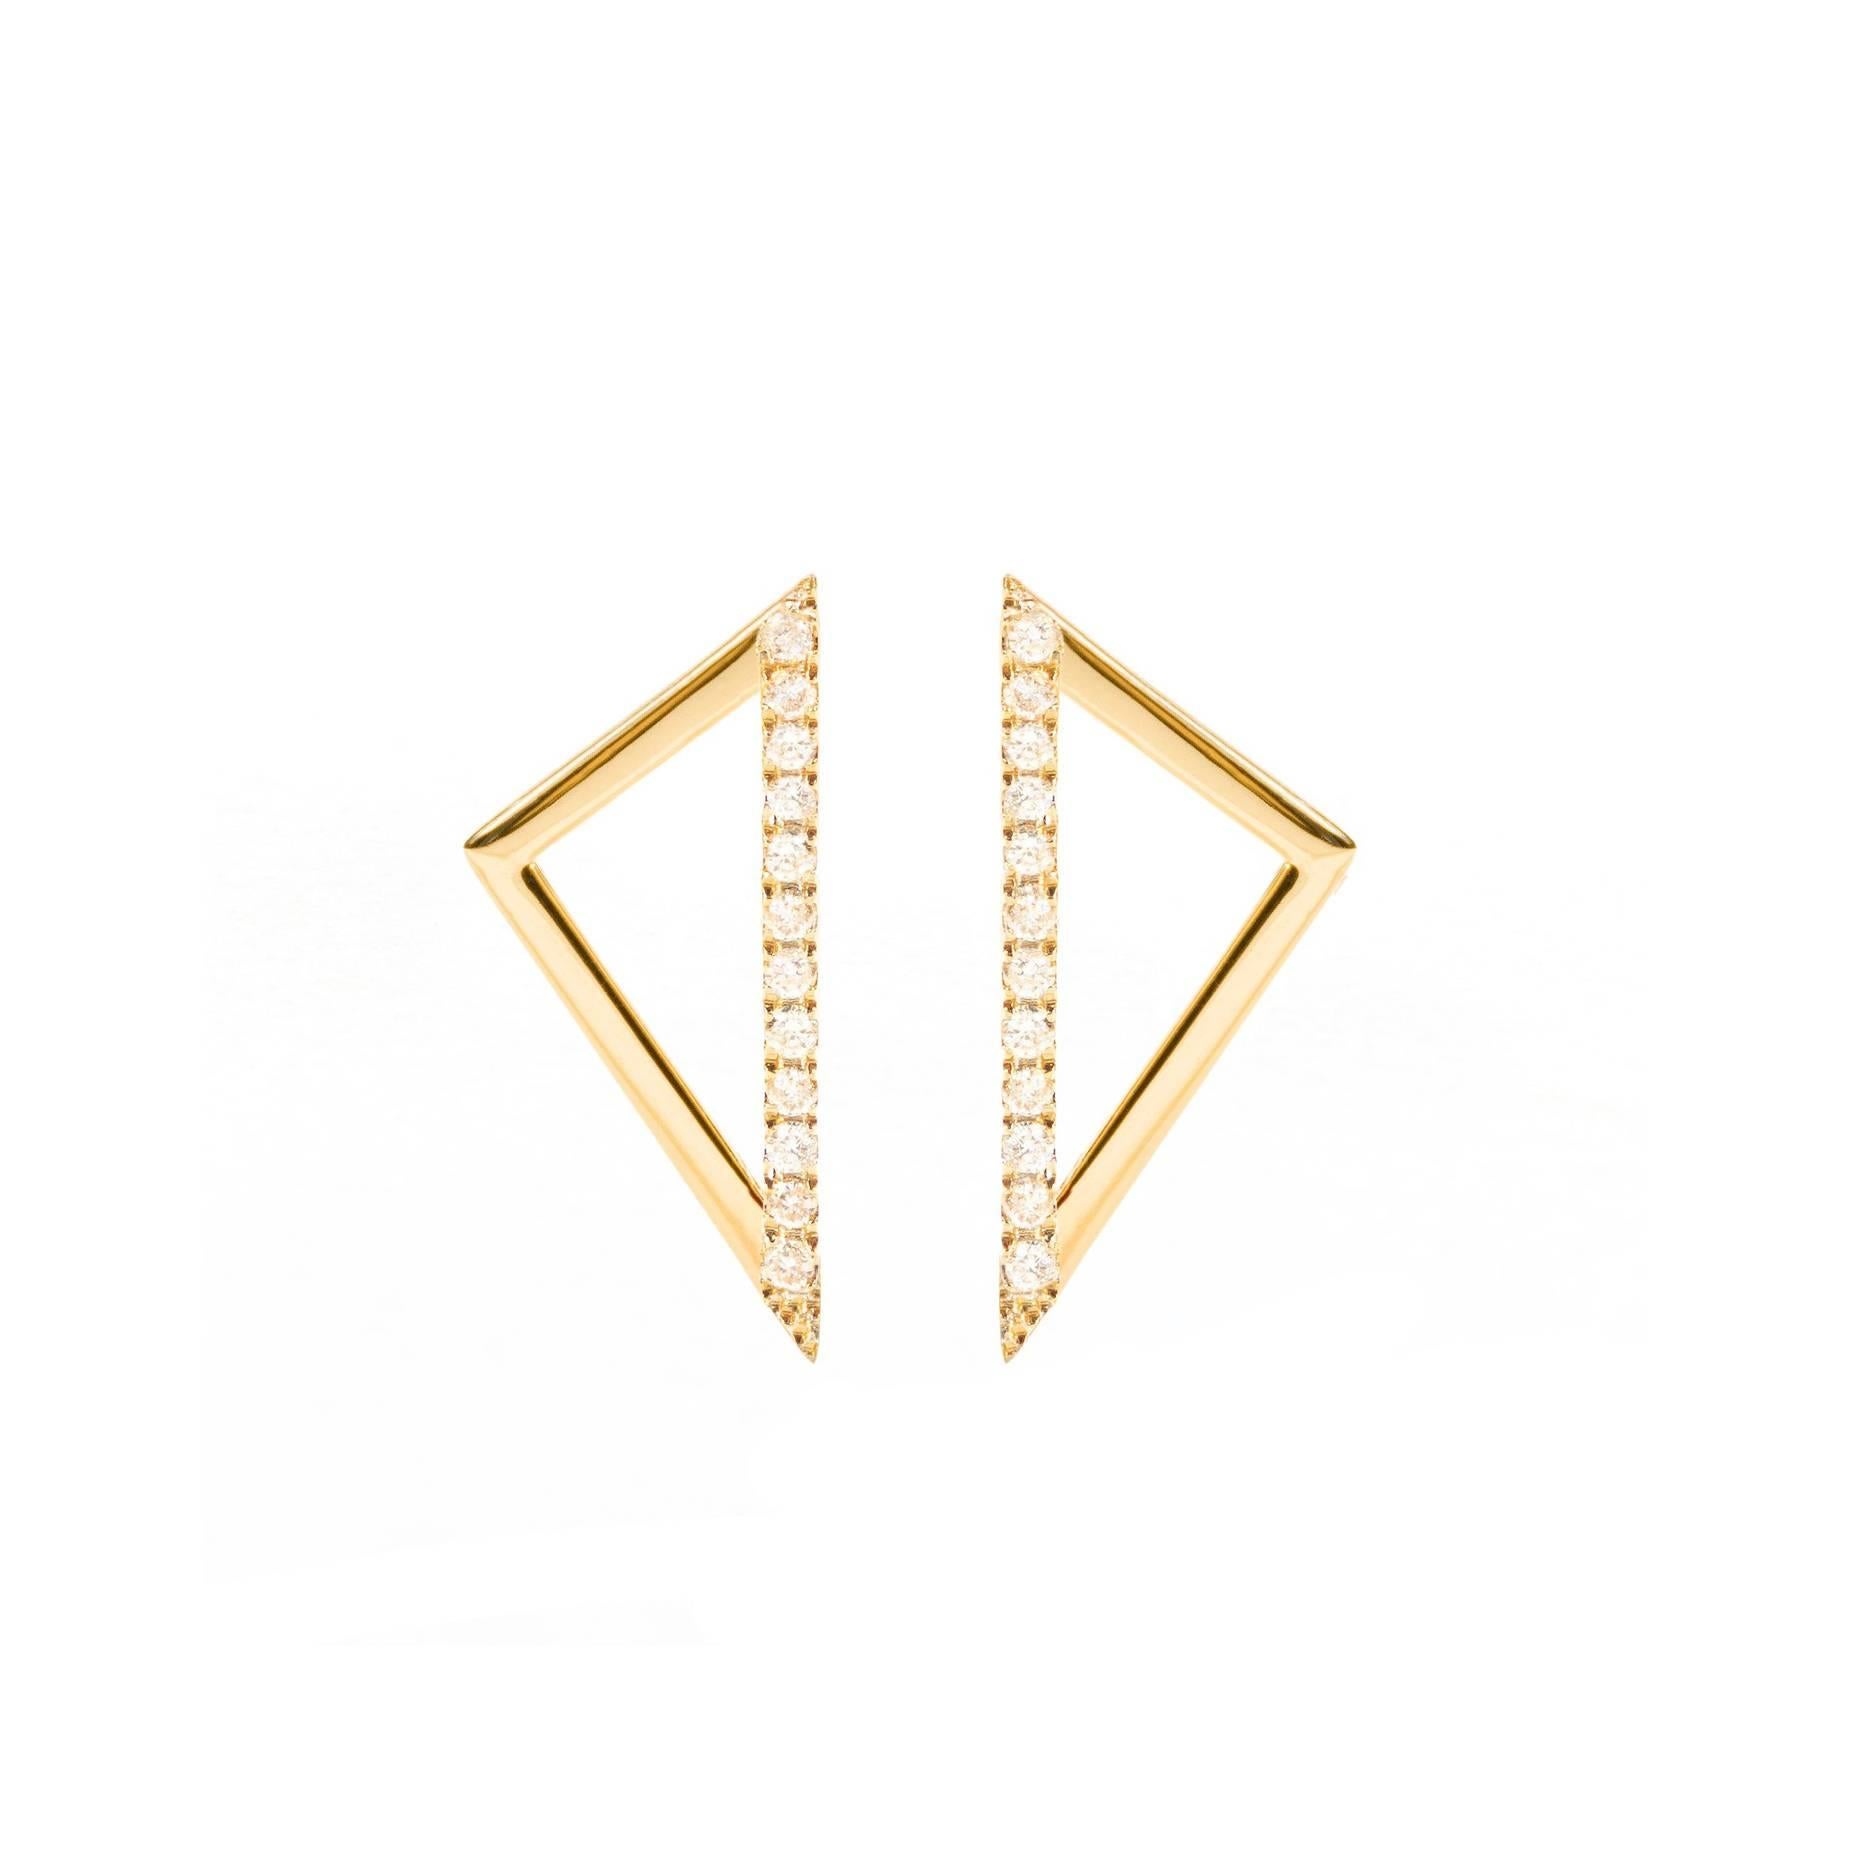 Sophie Birgitt Diamond Triangular Gold Earrings For Sale